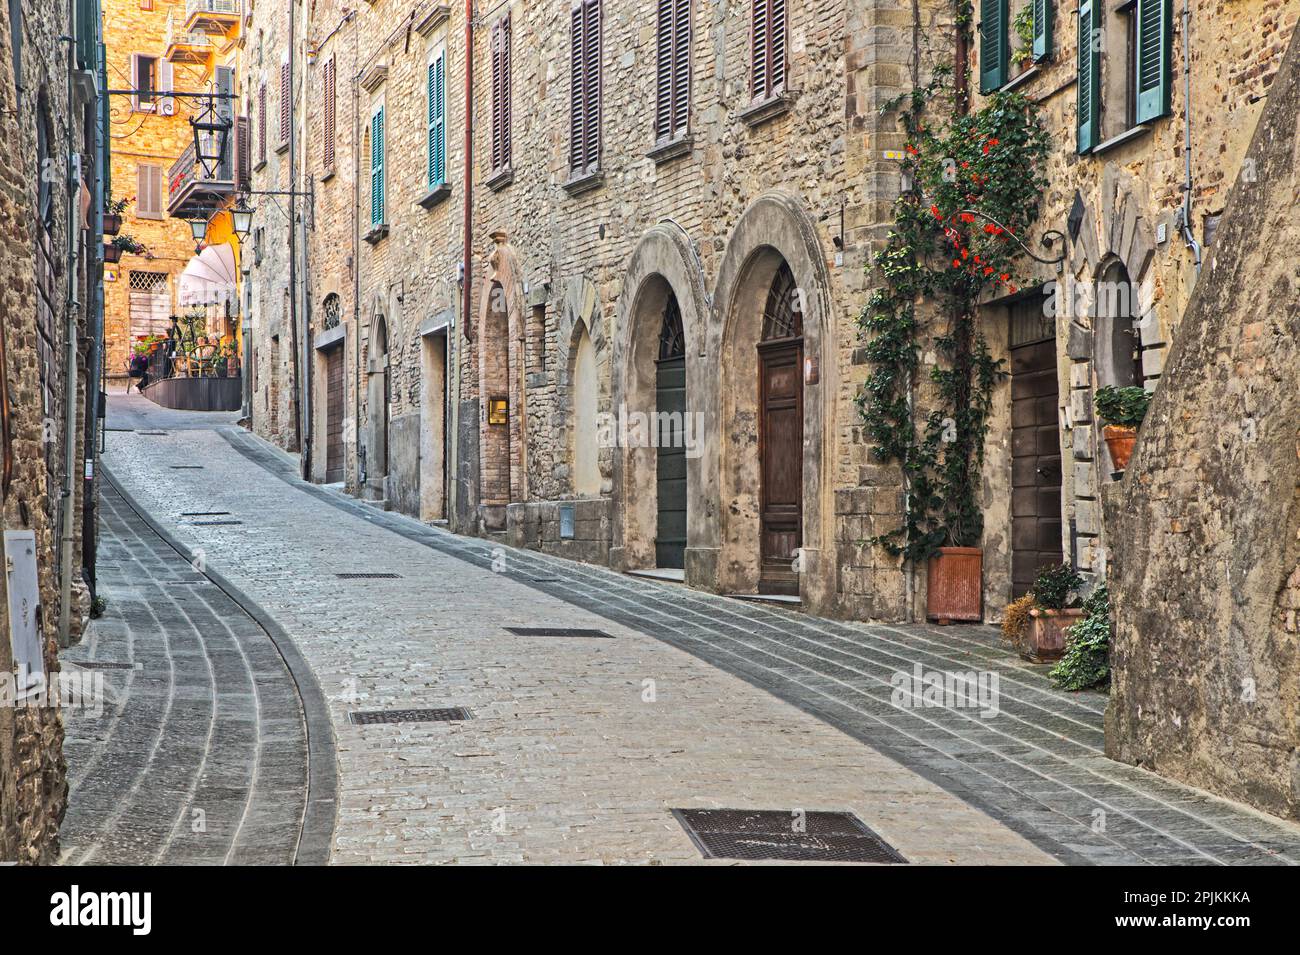 Italien, Umbrien. Straße, die zum Hauptplatz in der historischen Stadt Montone führt. Stockfoto